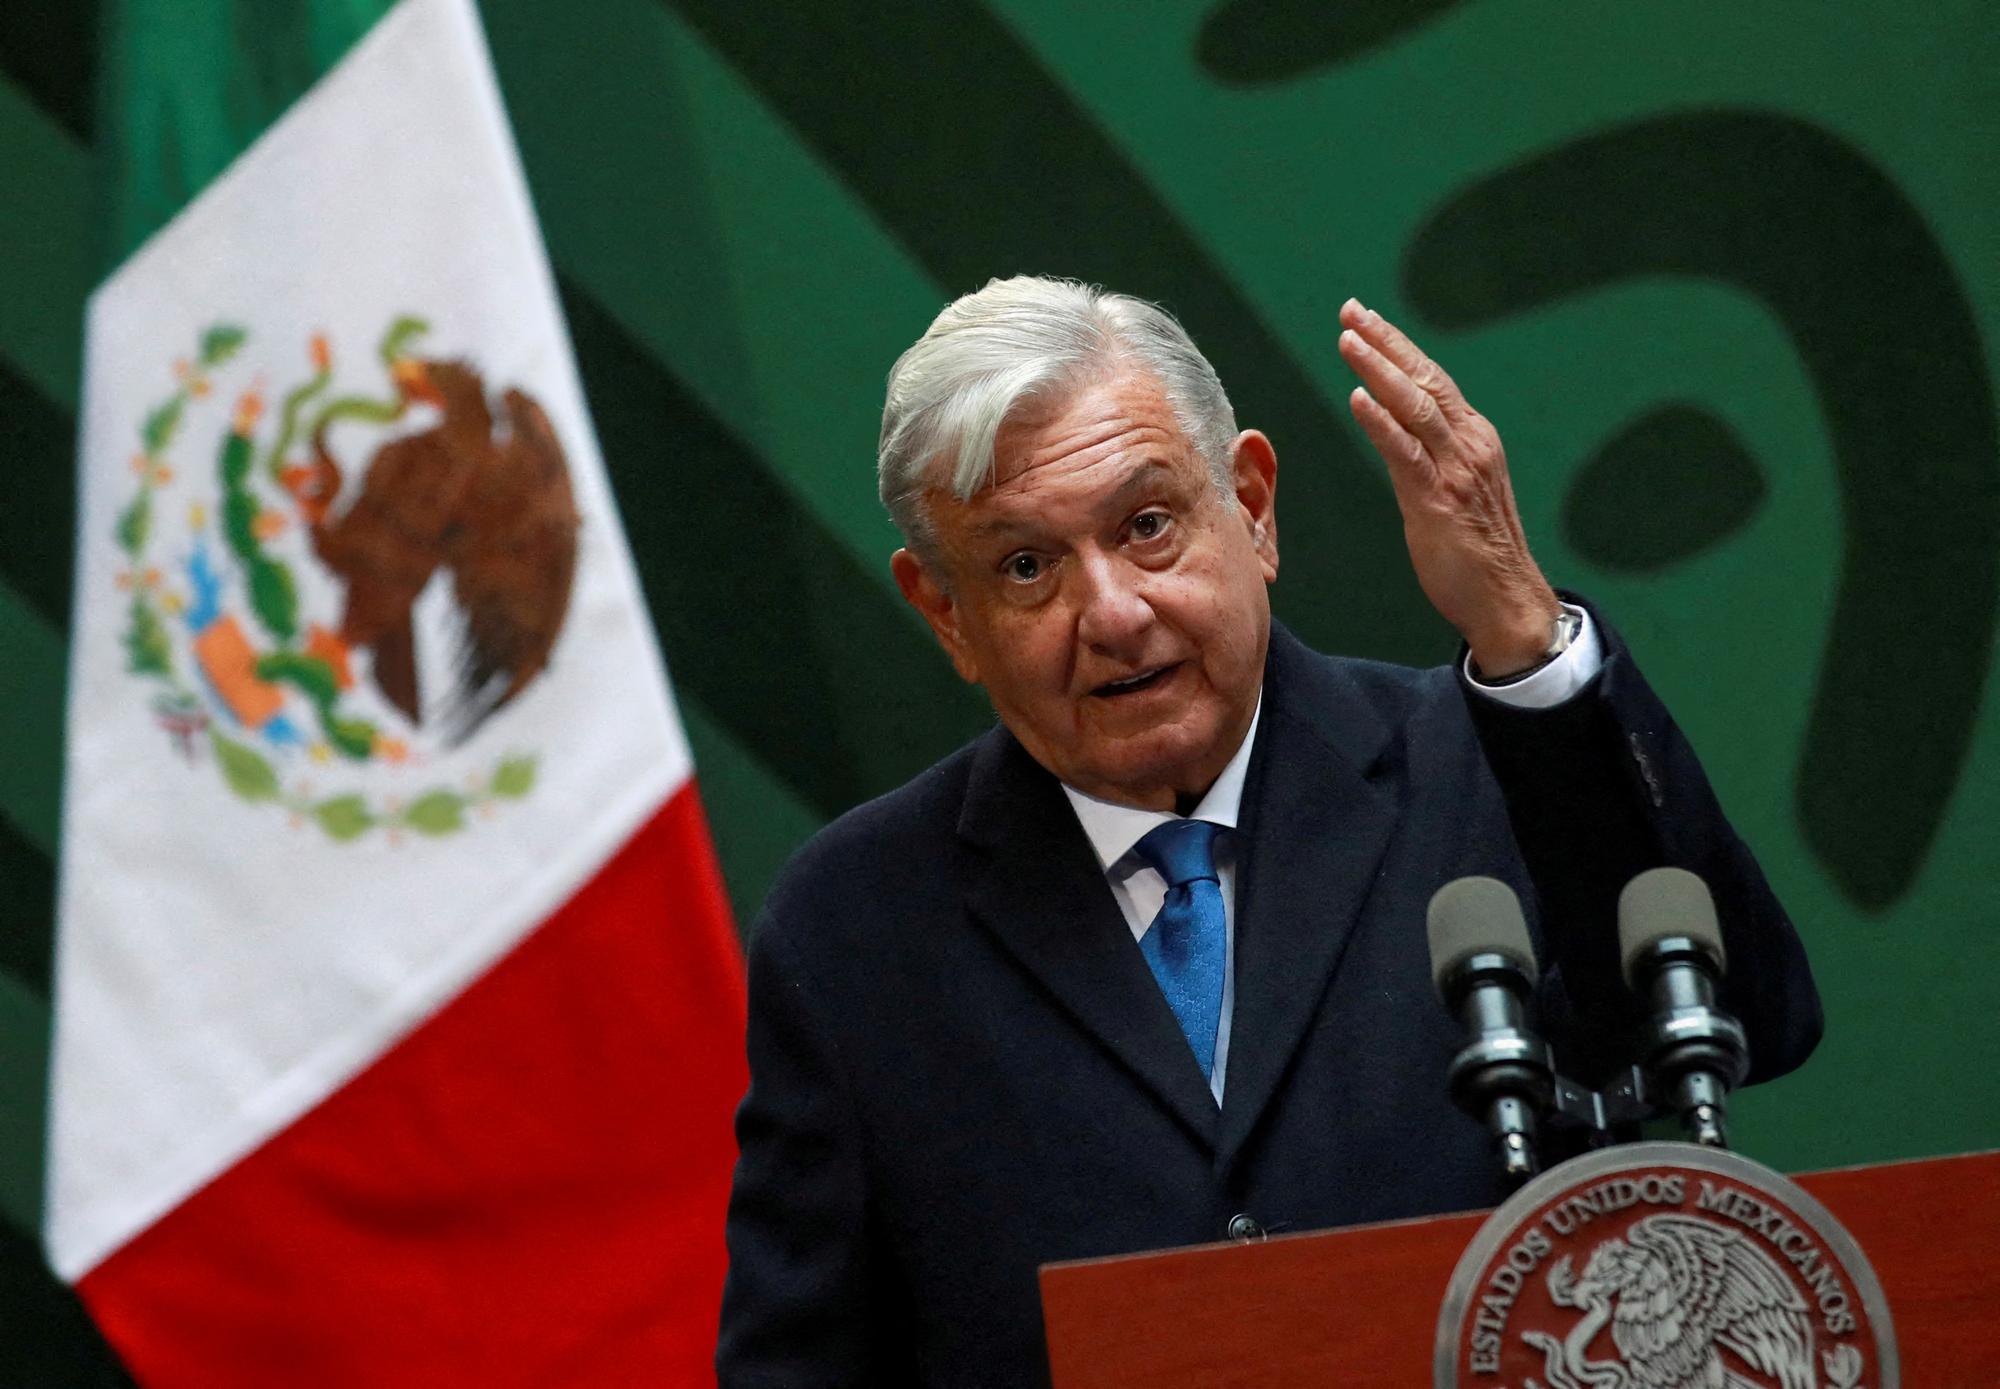 Andrés Manuel López Obrador a été élu président du Mexique en 2018 pour une durée de 6 ans. [REUTERS - Henry Romero]